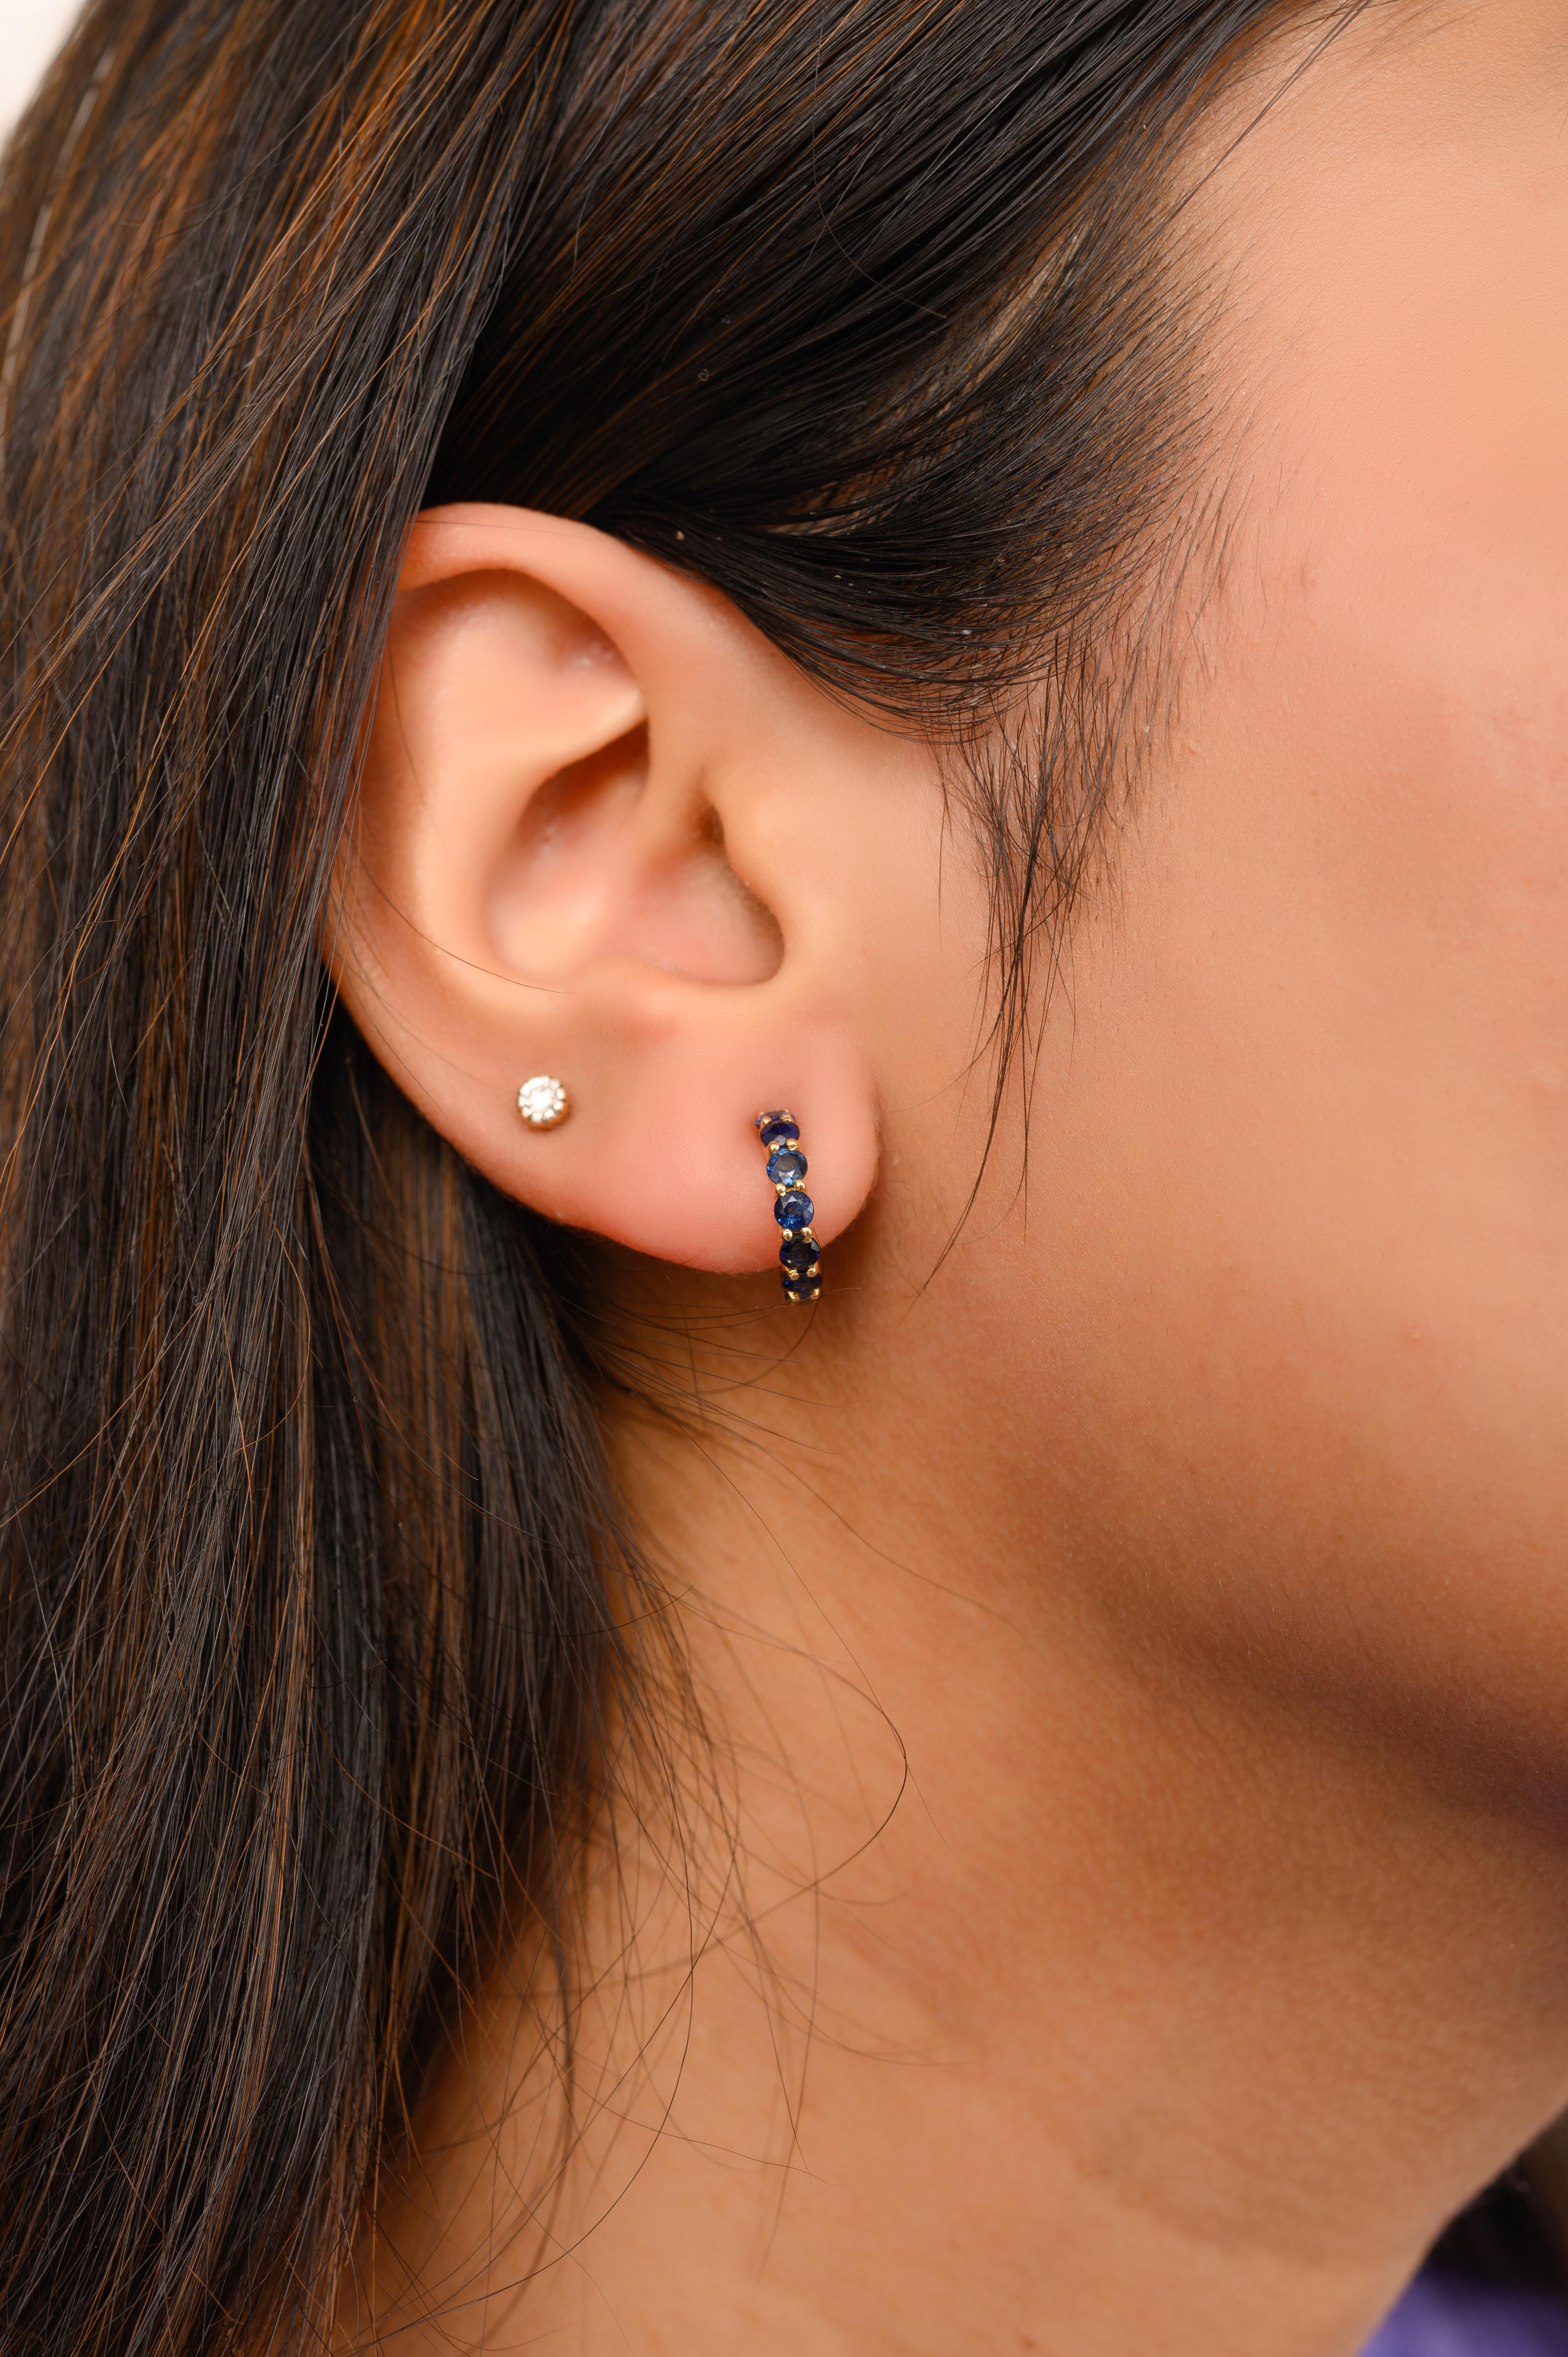 Handgefertigte zierliche blaue Saphir Huggie Hoop Earrings in 18K Gold, um Ihren Look zu unterstreichen. Um mit Ihrem Look ein Statement zu setzen, brauchen Sie Reifohrringe. Diese Ohrringe mit rund geschliffenen Saphiren sorgen für einen